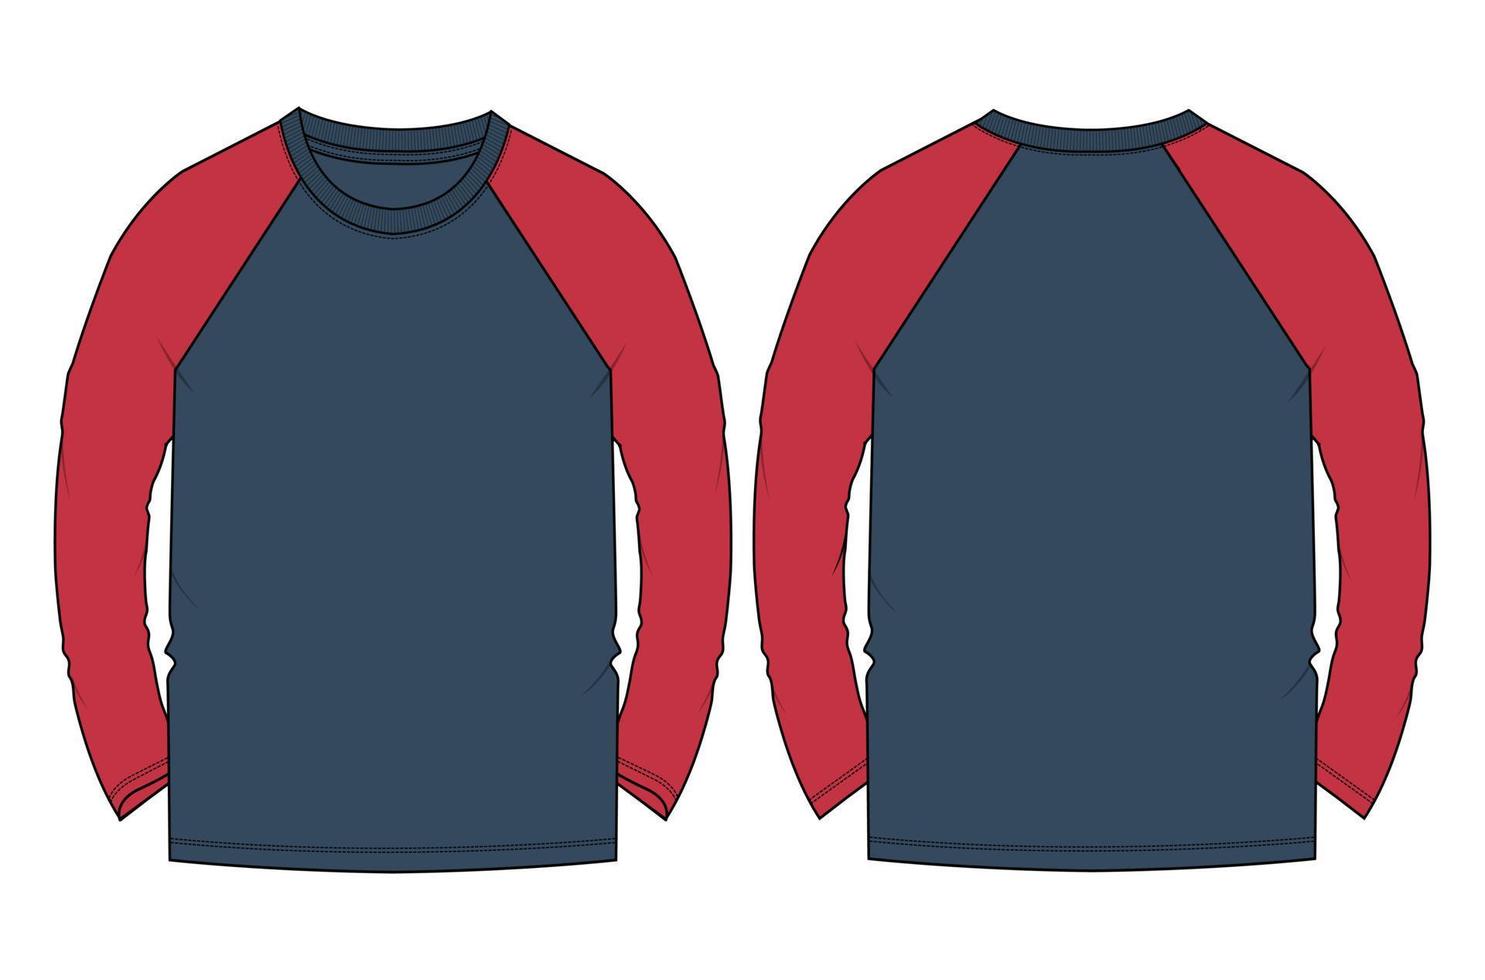 camiseta de manga larga raglán de dos tonos ilustración vectorial plantilla de color azul marino vistas frontal y posterior vector